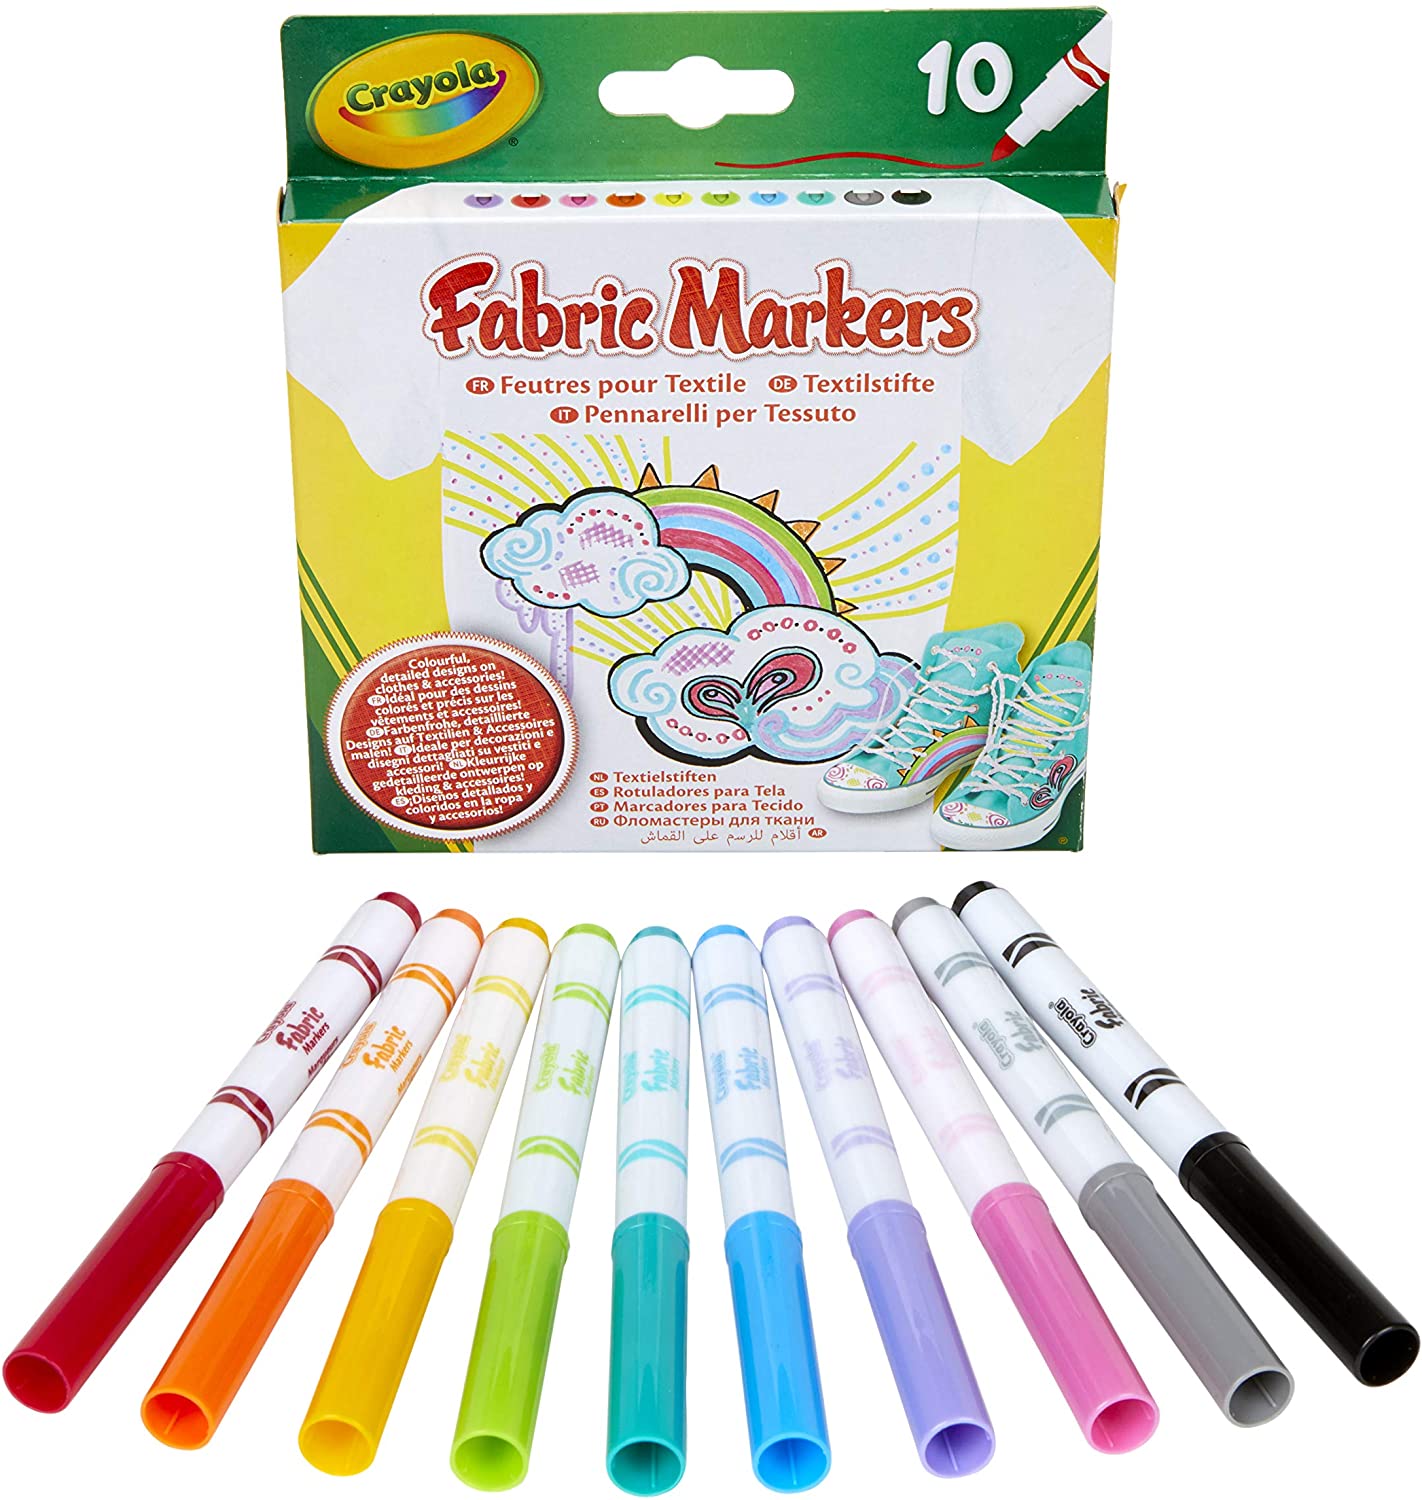 Crayola Super Tips rotuladores lavables colores pastel (12 uds.) desde 2,99  €